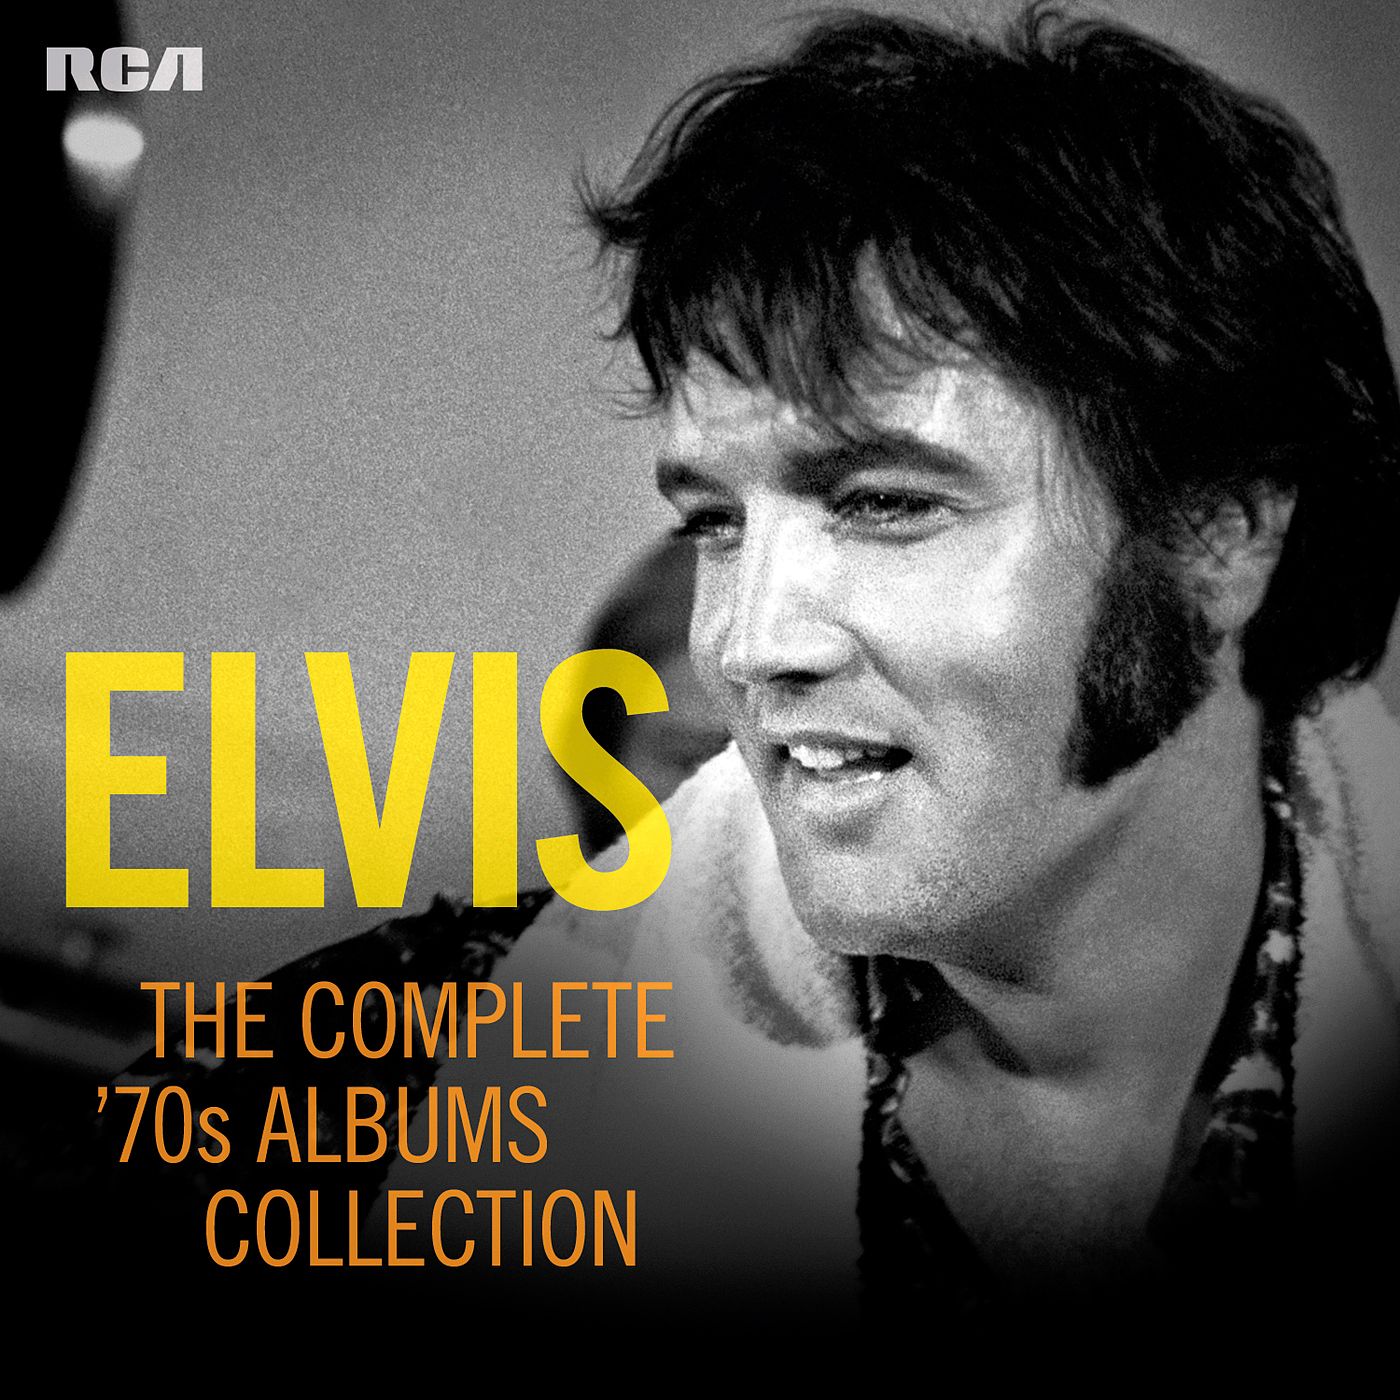 Elvis Presley - The Complete ’70s Albums Collection (2015) [Qobuz FLAC 24bit/96kHz]